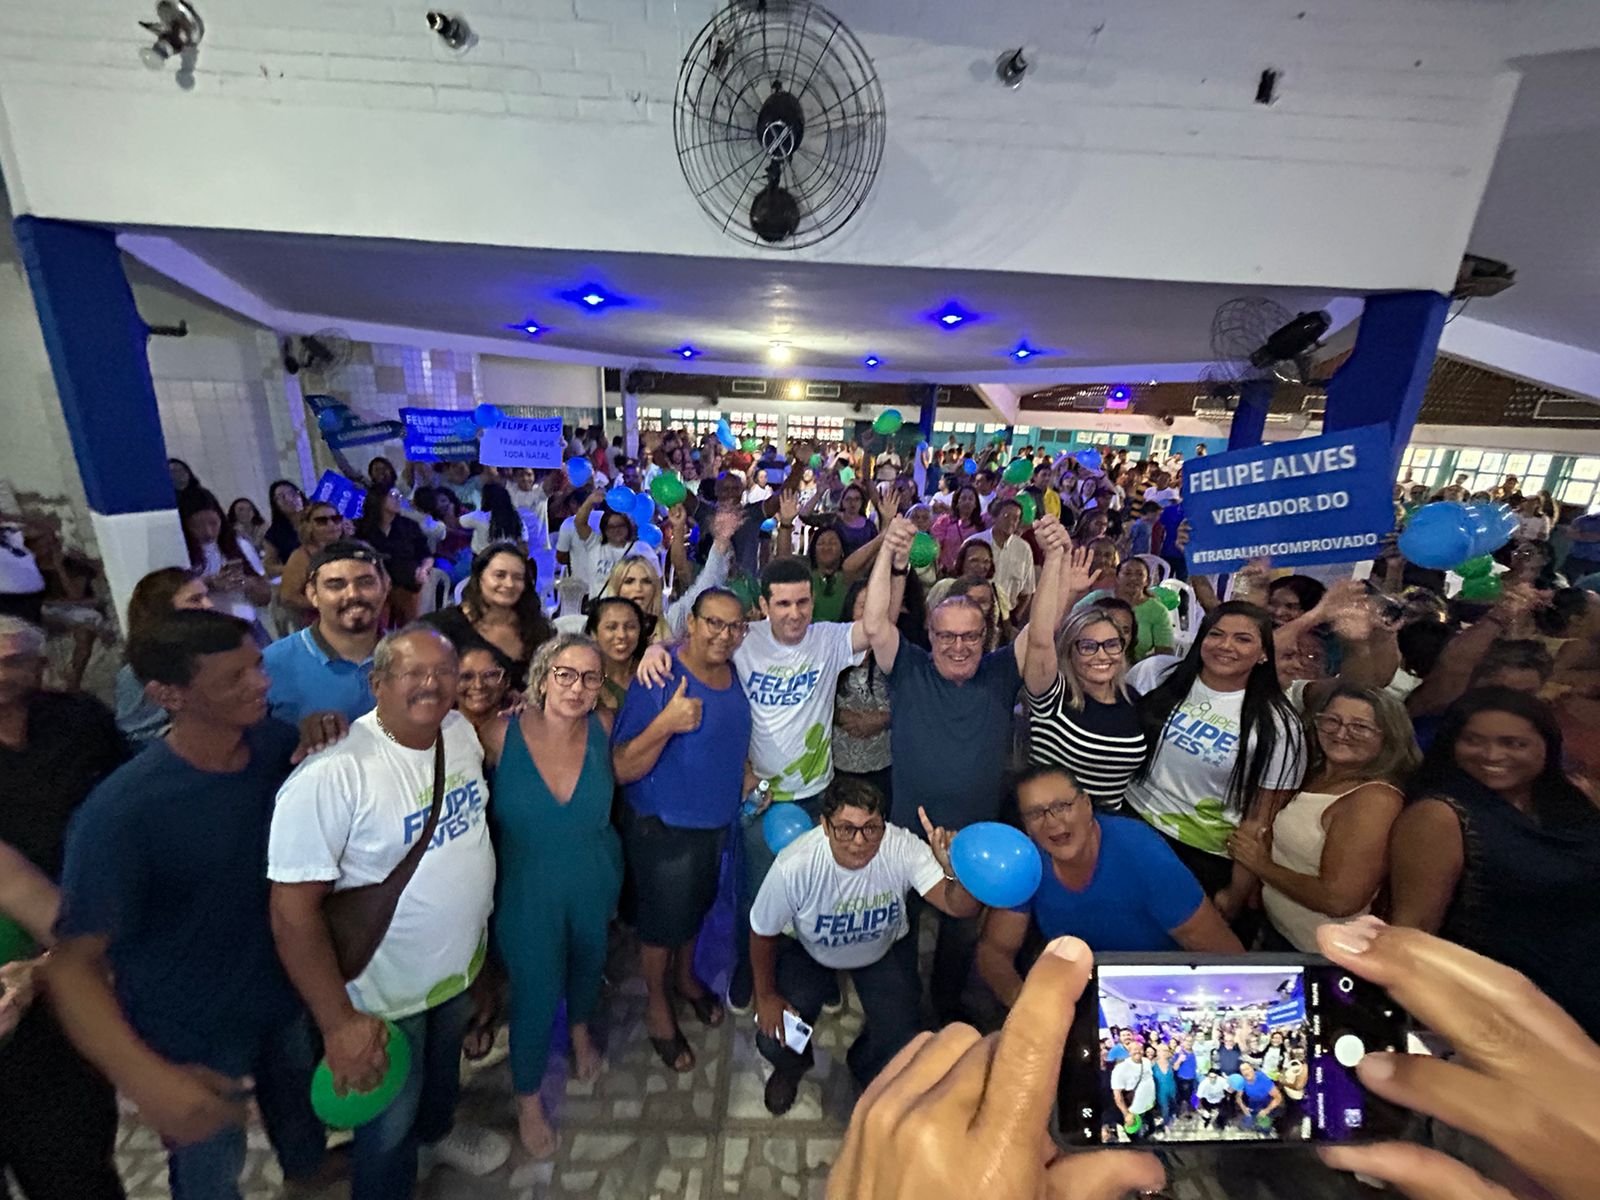 Vereador Felipe Alves reúne centenas de apoiadores em Natal